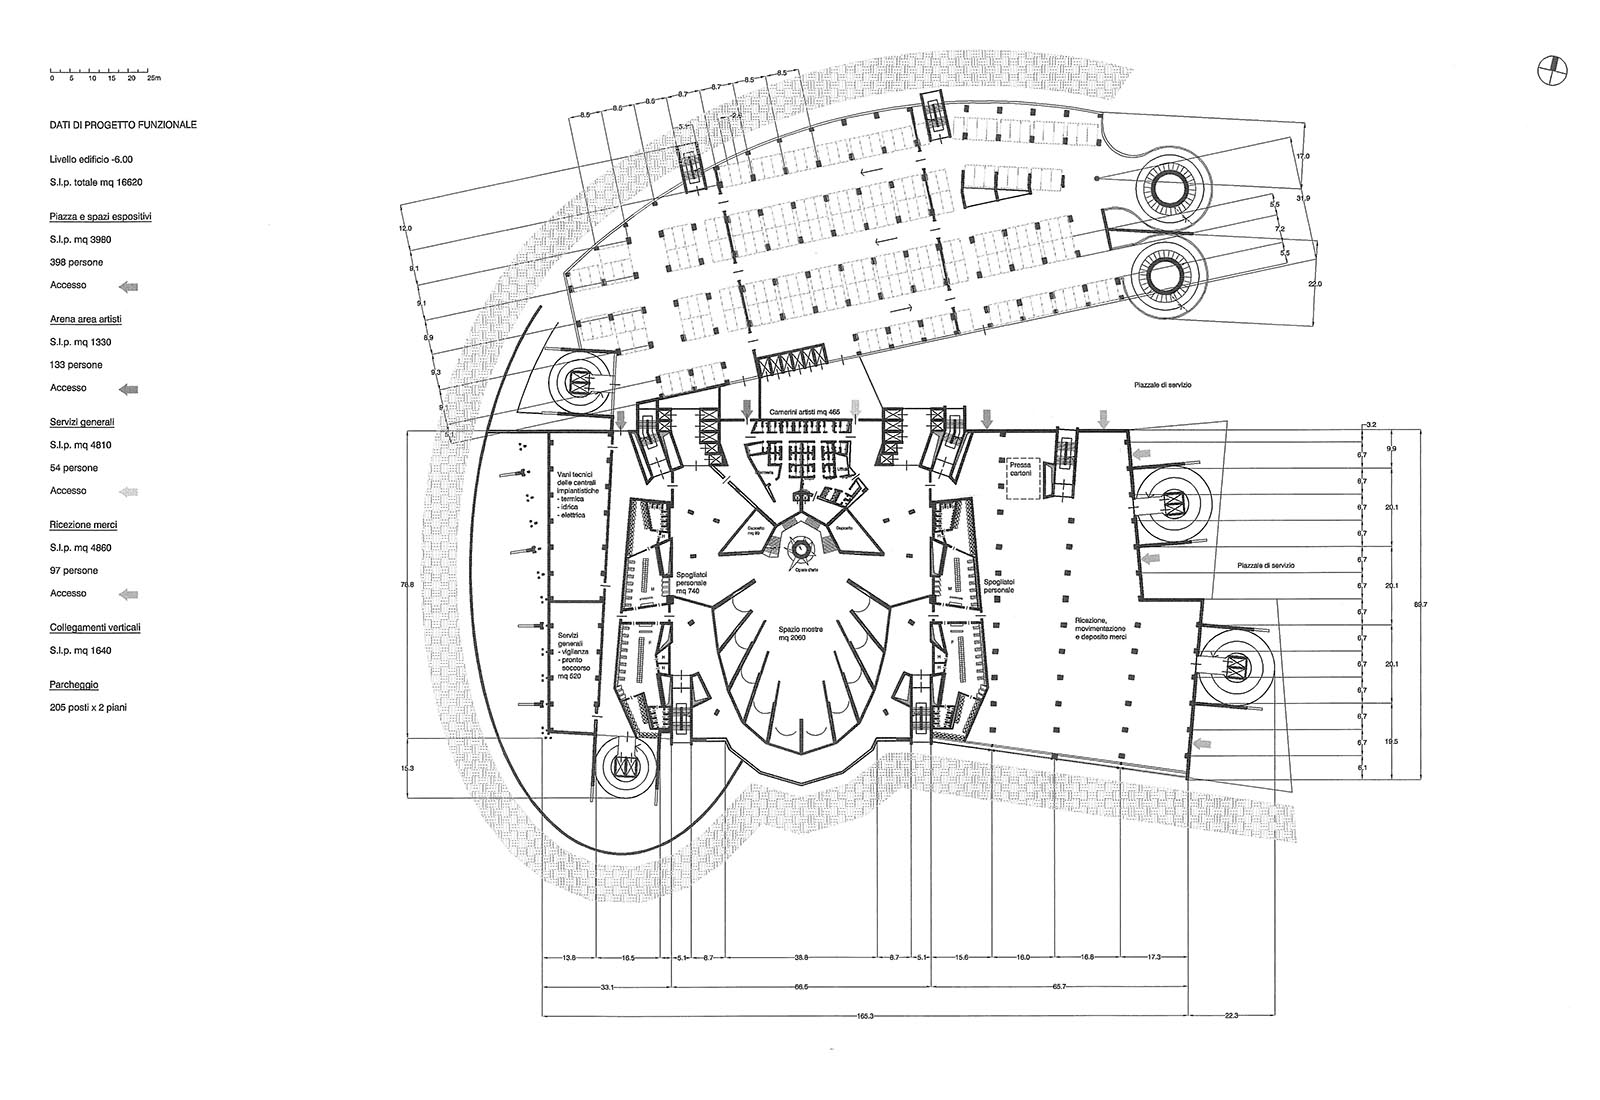 Leisure center in Rho - Ground floor plan